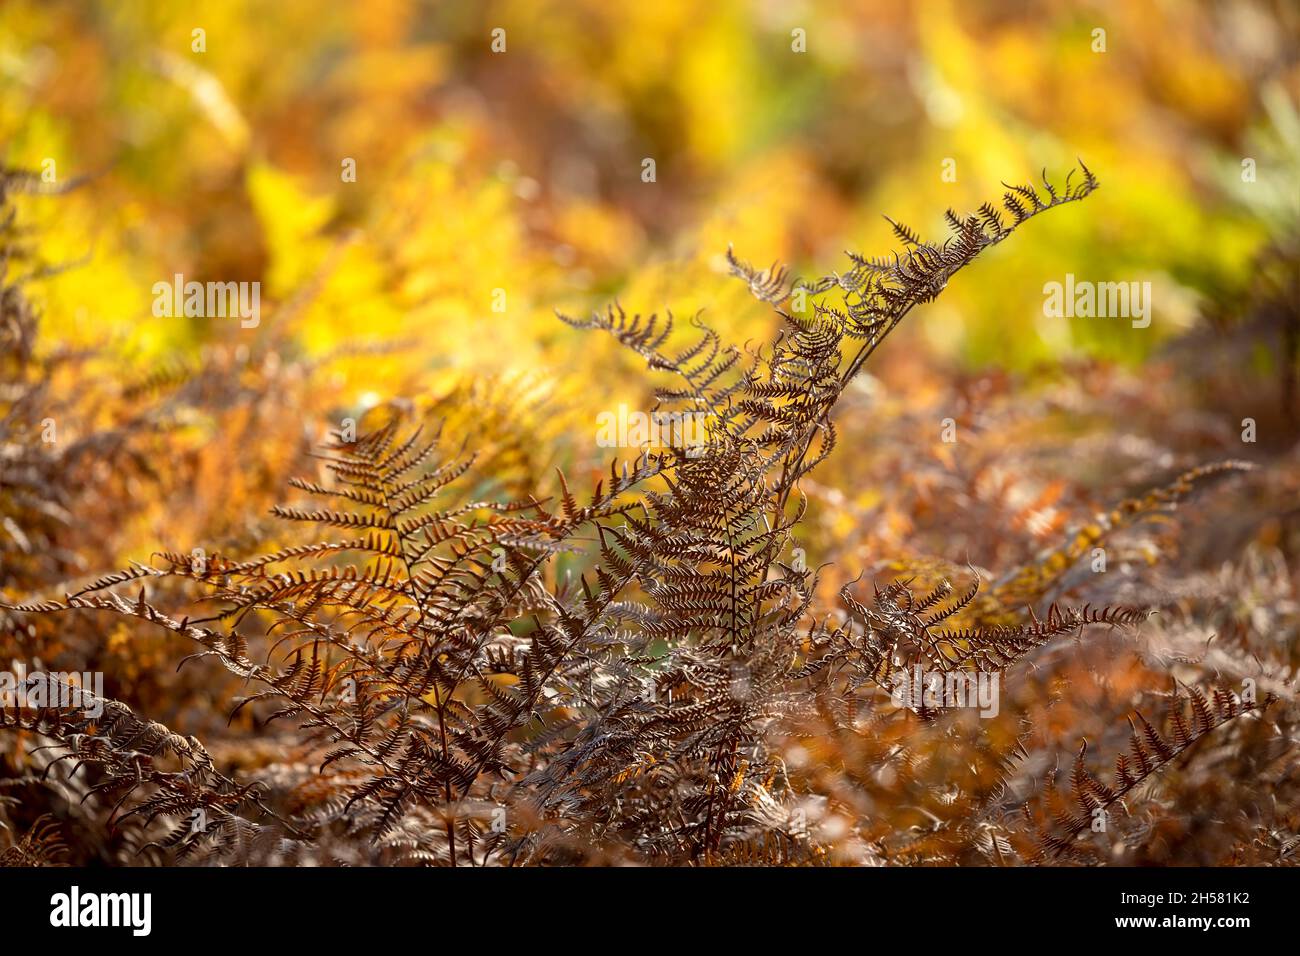 dry orange fern leaf in aurtumn forest Stock Photo